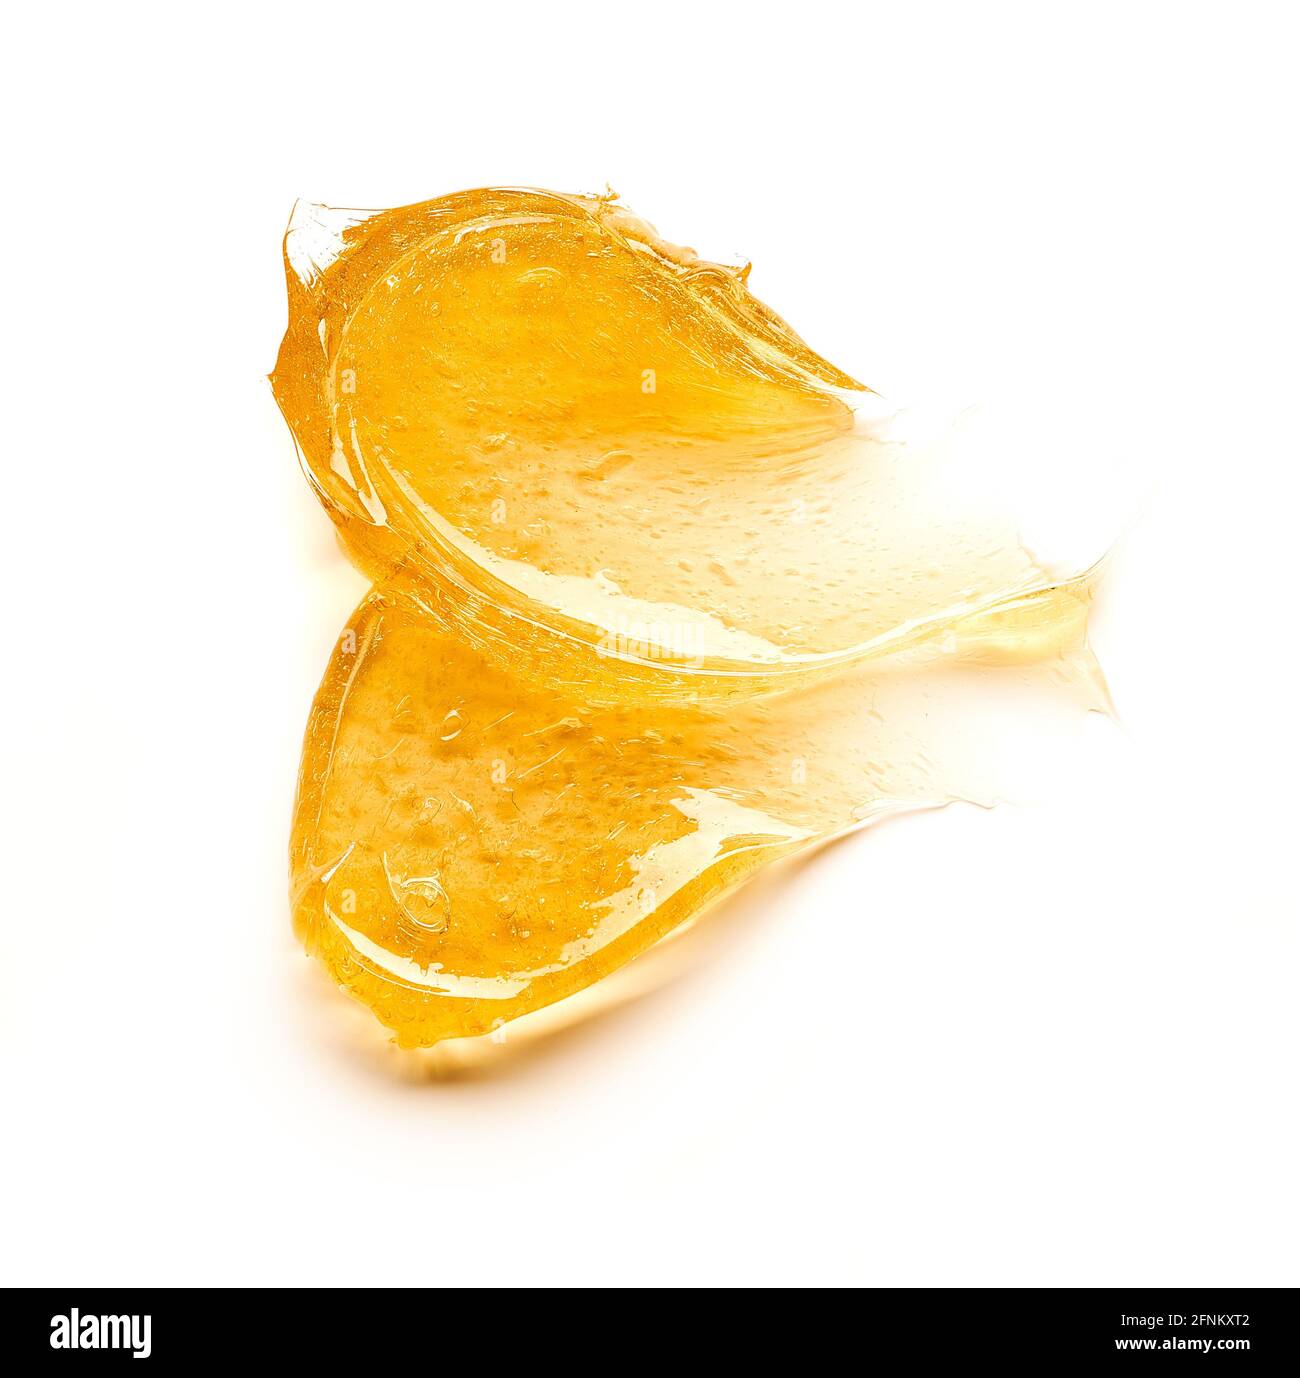 Transparenter gelber Abstrich von Gesichtscreme oder goldenem Honig isoliert auf weißem Hintergrund. Goldene cremige Textur auf weißem Hintergrund. Stockfoto